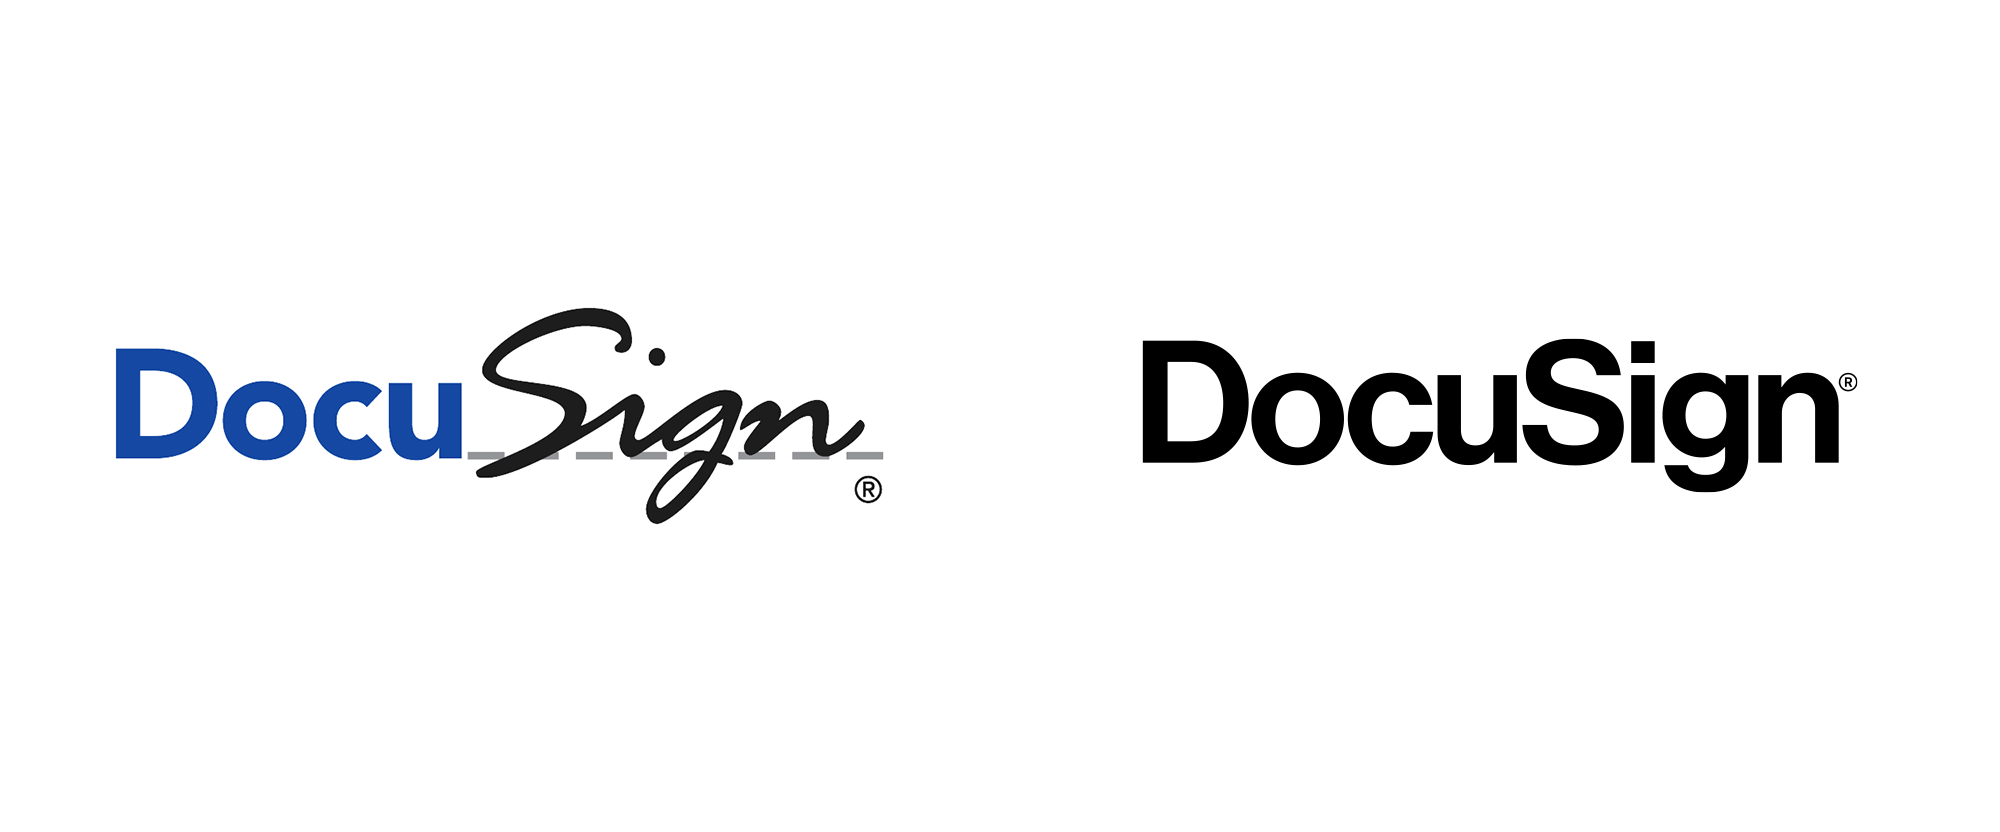 New Logo for DocuSign